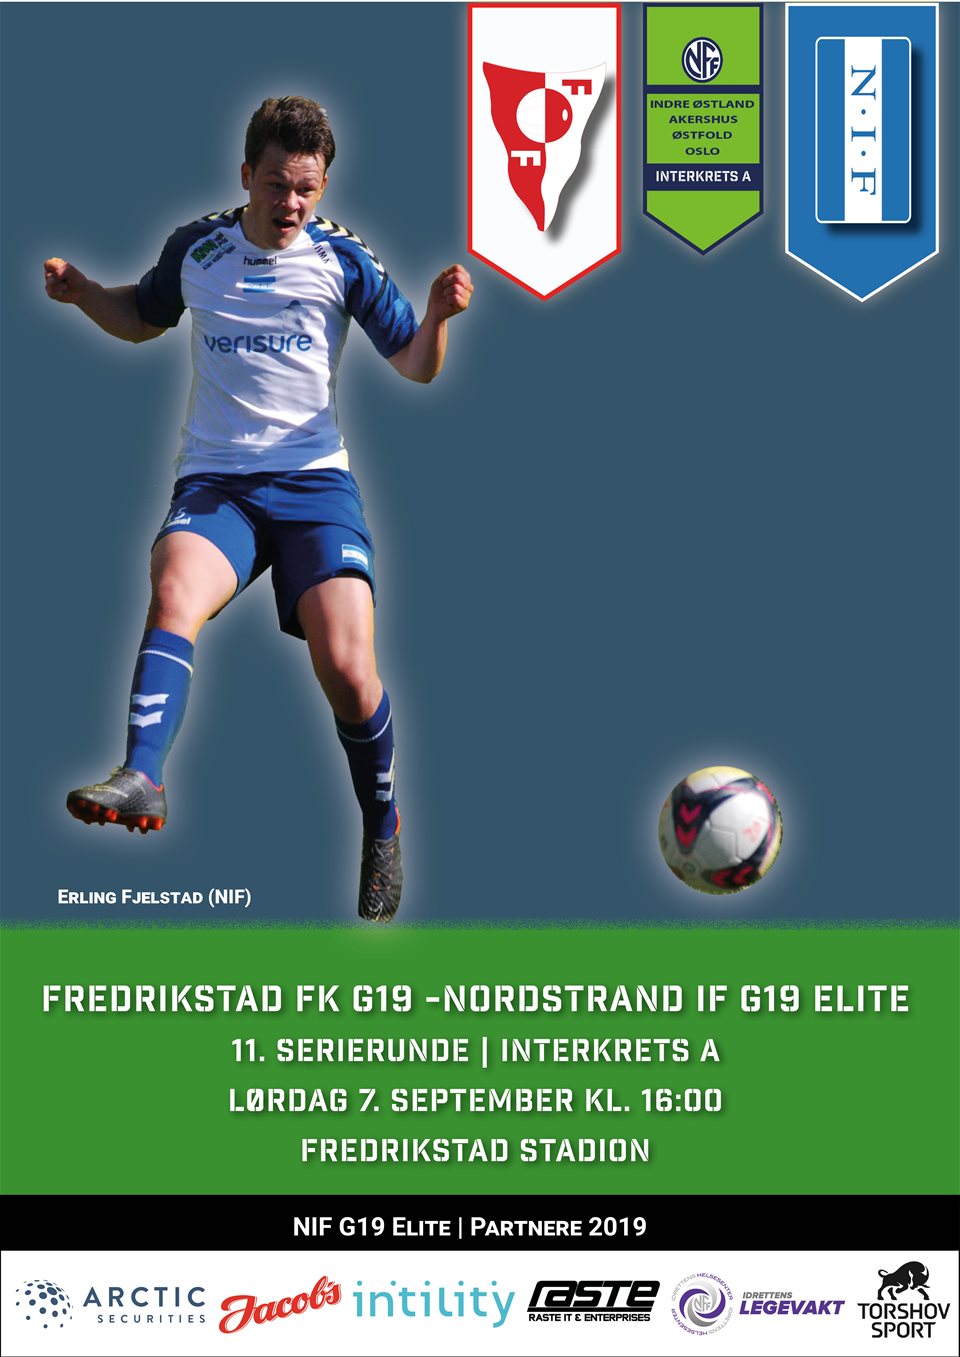 Utsatt juniorkamp mot Fredrikstad FK spilles lørdag 7. sept. kl. 1600 på Fredrikstad Stadion